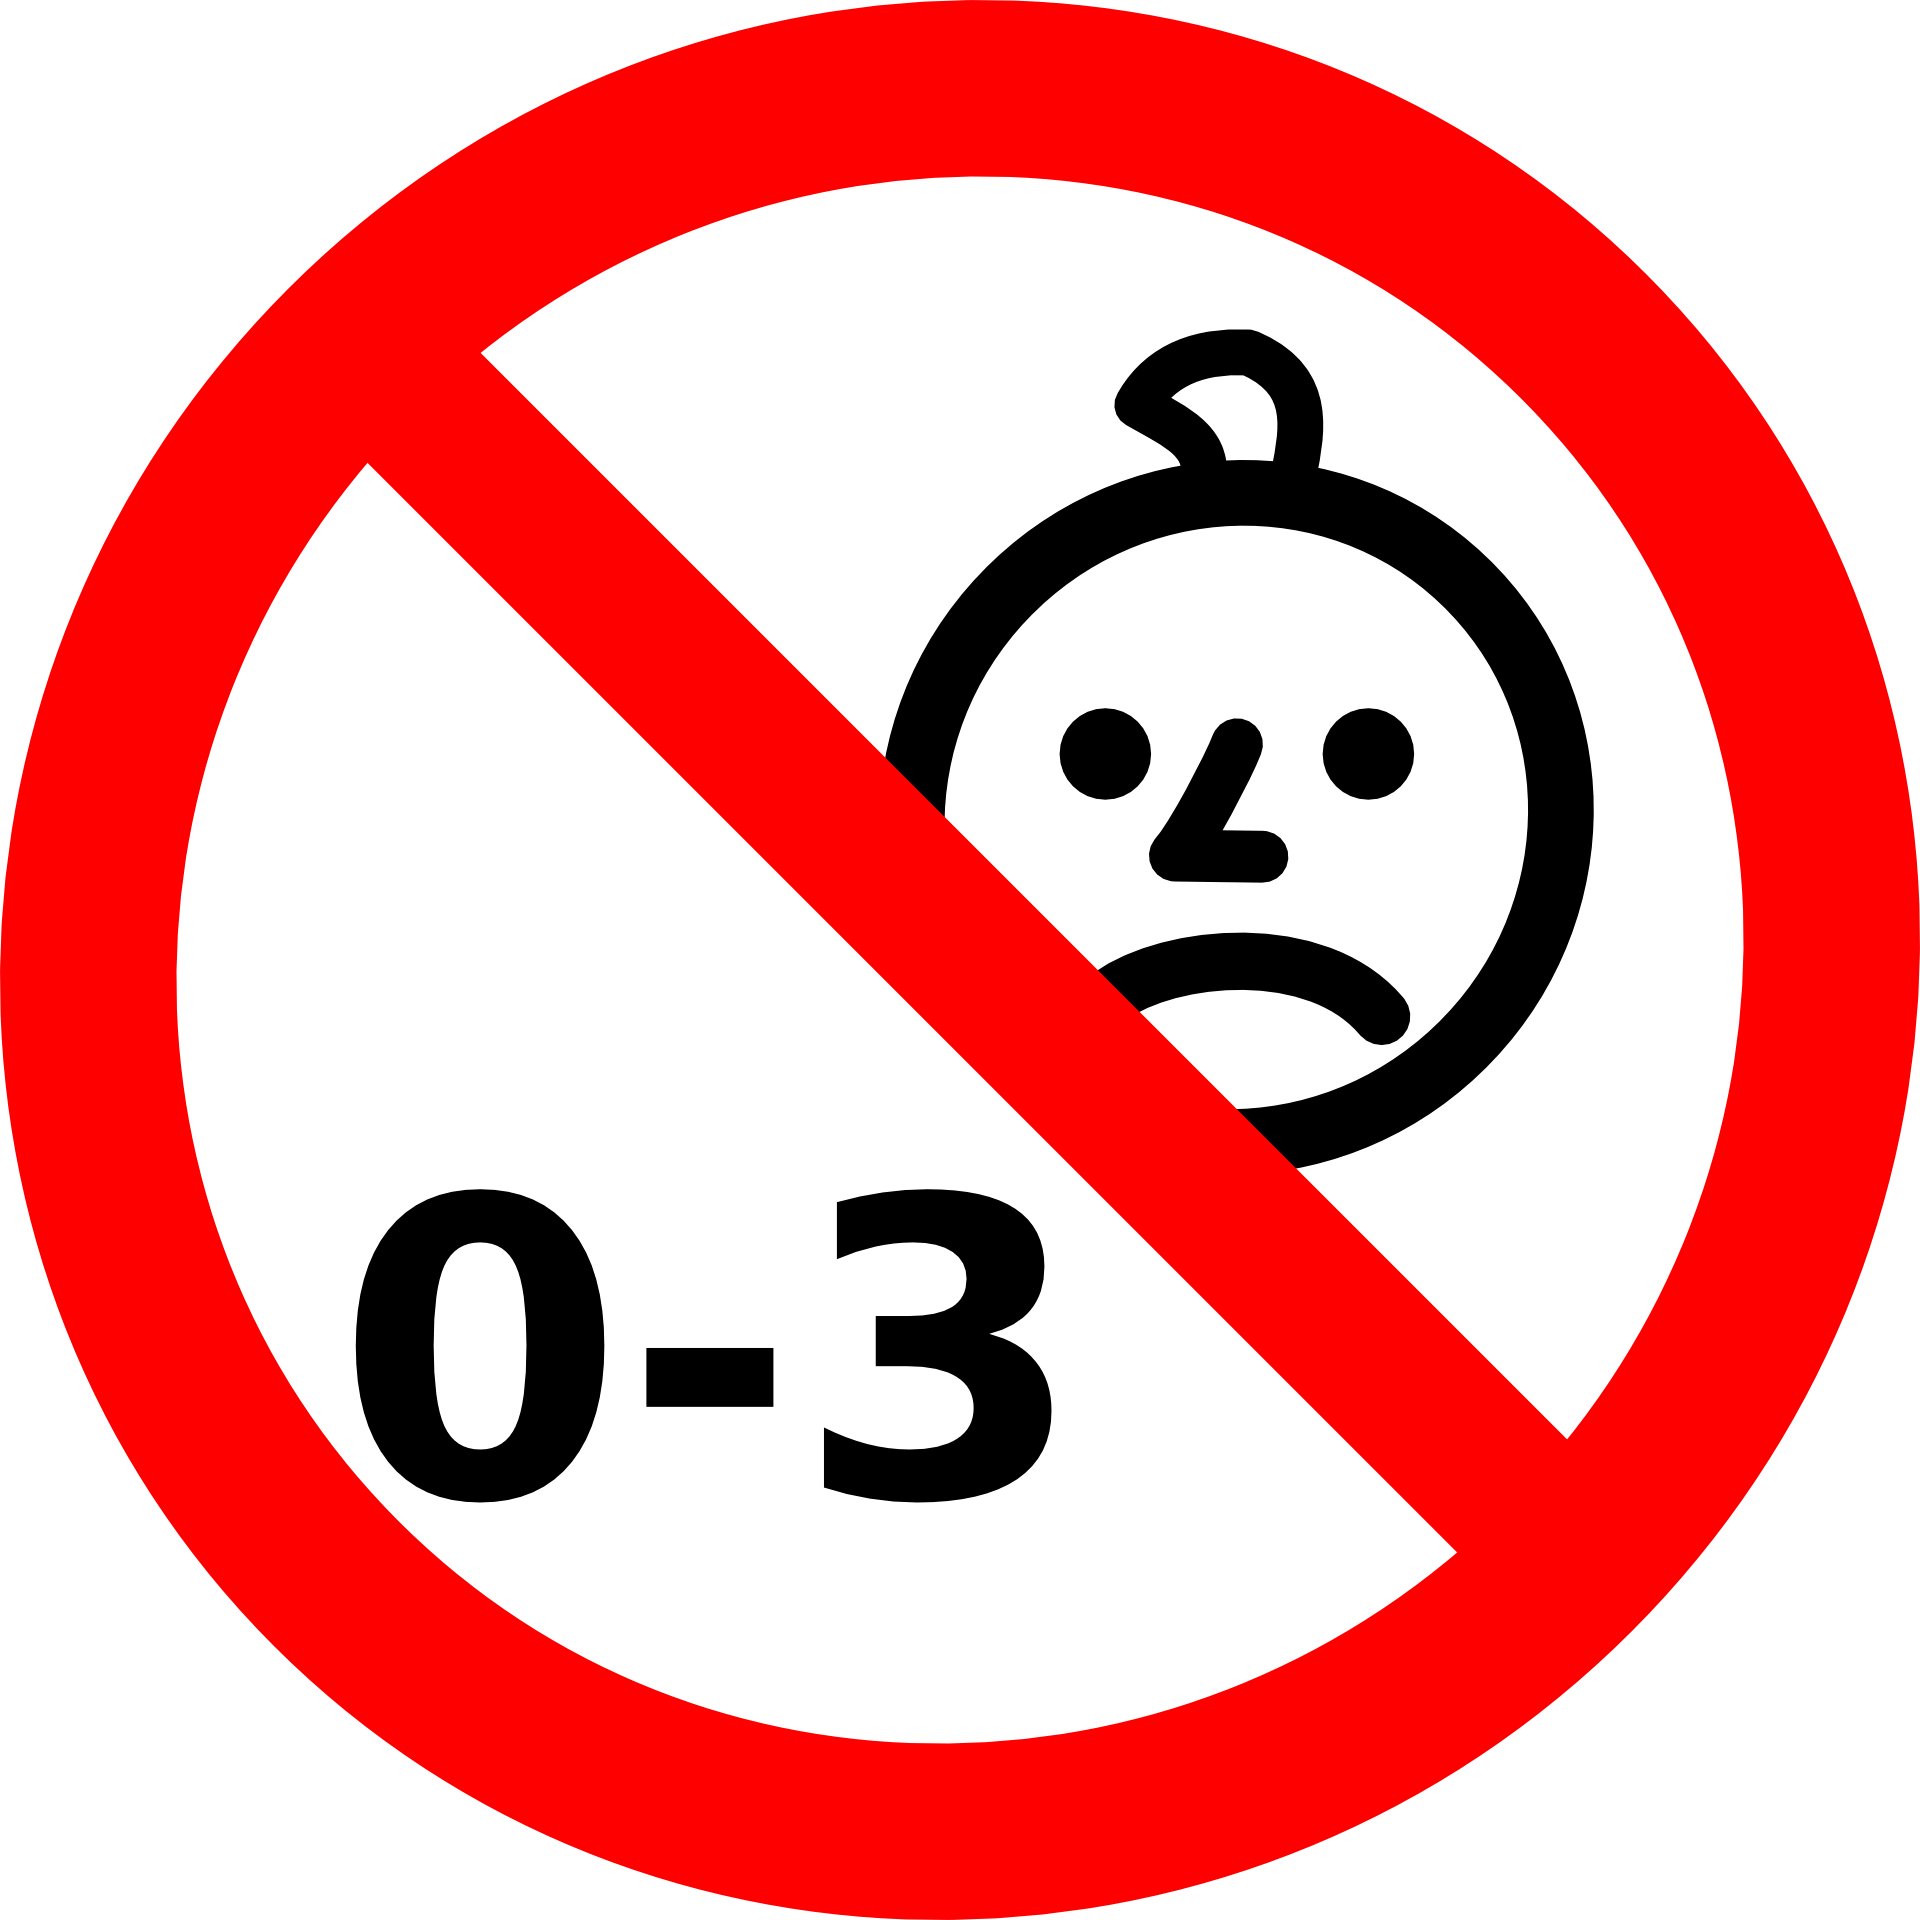 Cheesepolice0. Значок детям 0-3 запрещено. Запрещающие знаки для детей. Значки запрета для детей. Запрещающие таблички для детей.